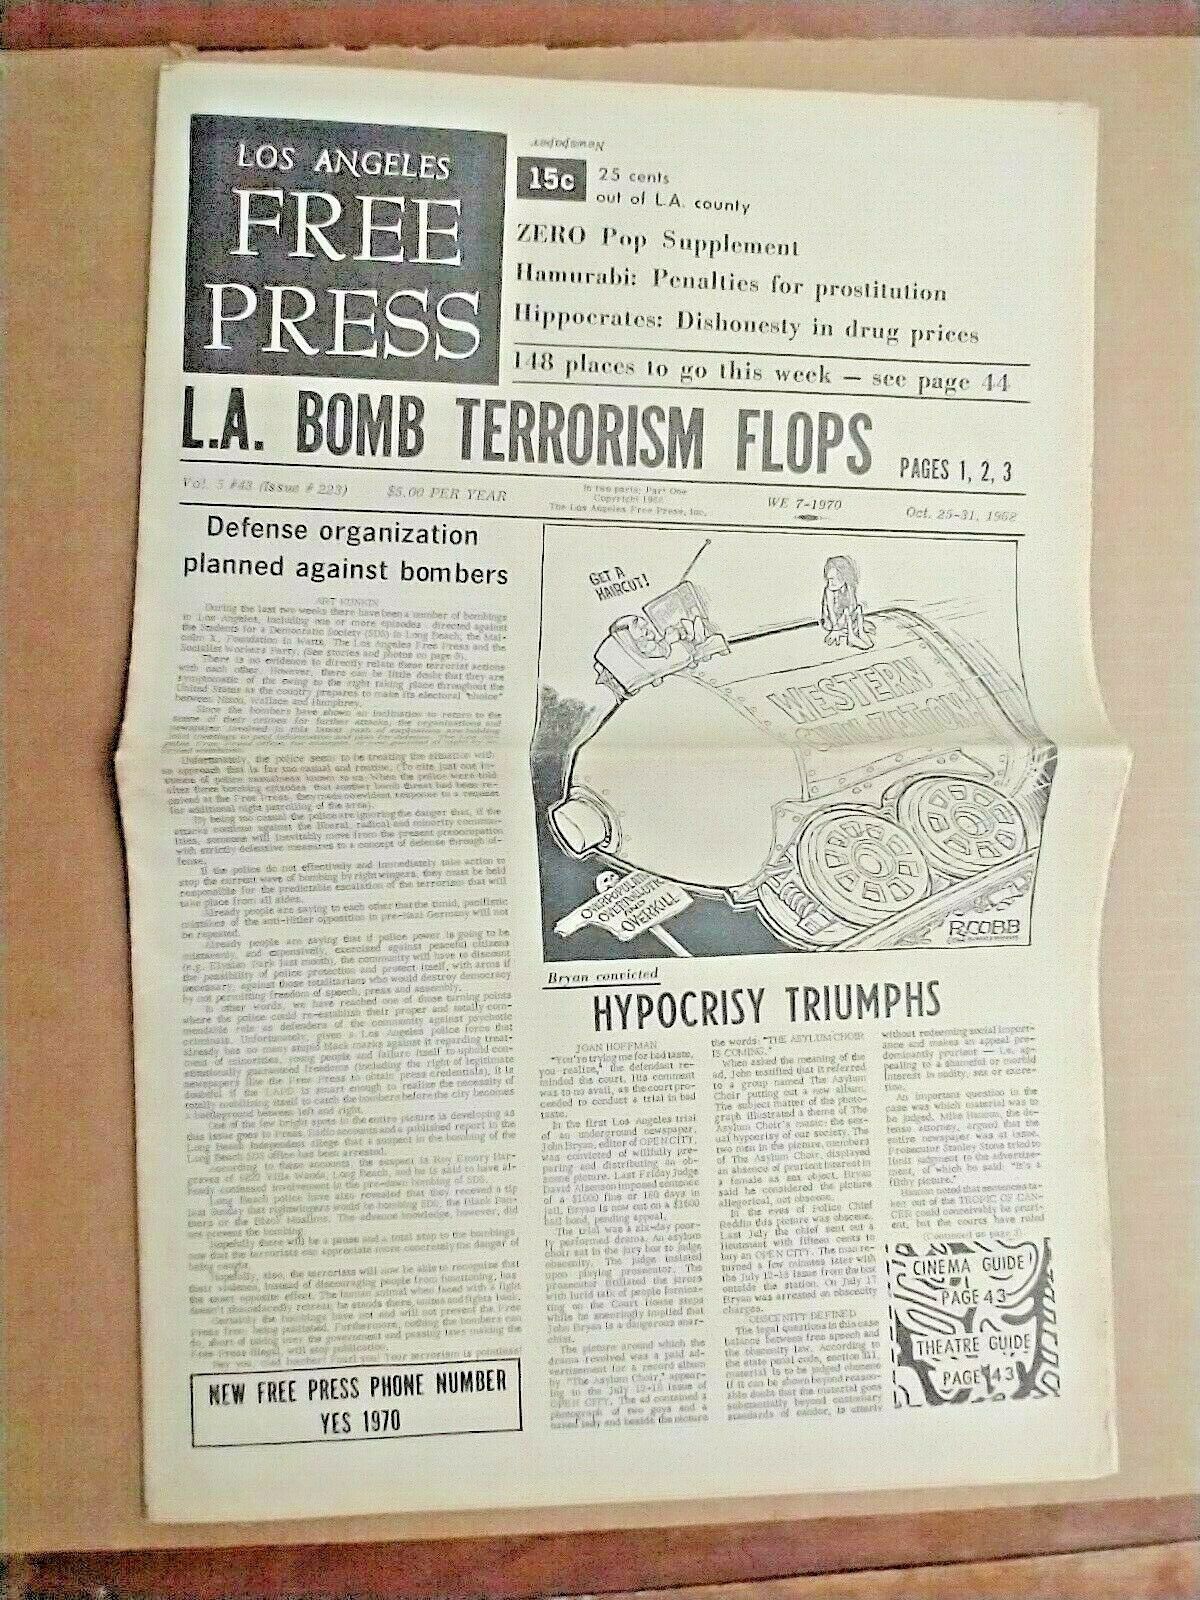 LOS ANGELES FREE PRESS UNDERGROUND NEWSPAPER 1968/ VELVET UNDERGROUND CONCERT AD